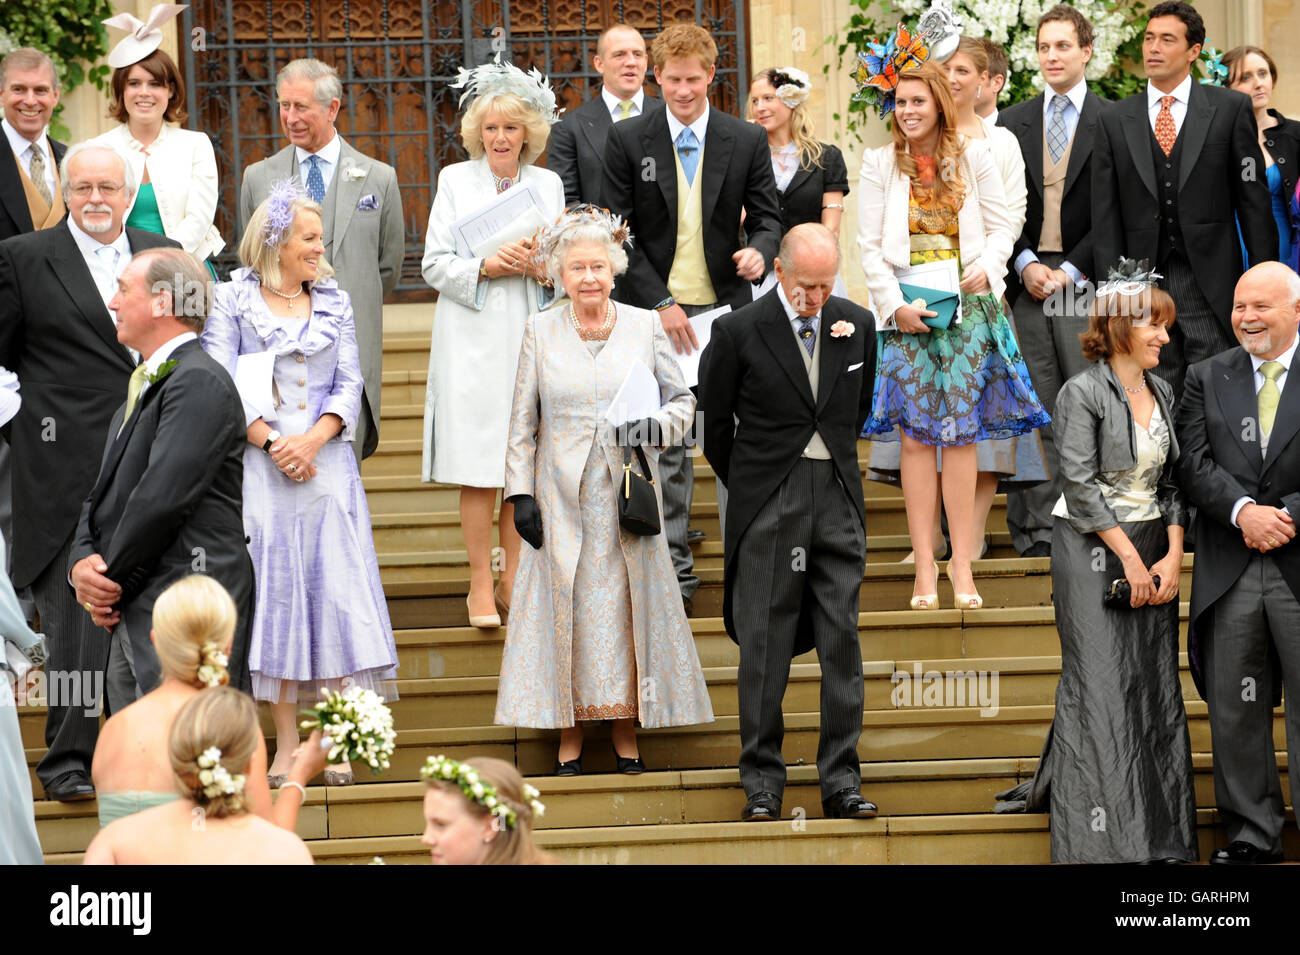 La reine Elizaberth II déonde son petit-fils aîné Peter Phillips et Autumn Kelly alors qu'elle quitte la chapelle Saint-Georges à Windsor, en Angleterre, après la cérémonie de mariage du fils de la princesse royale. Banque D'Images